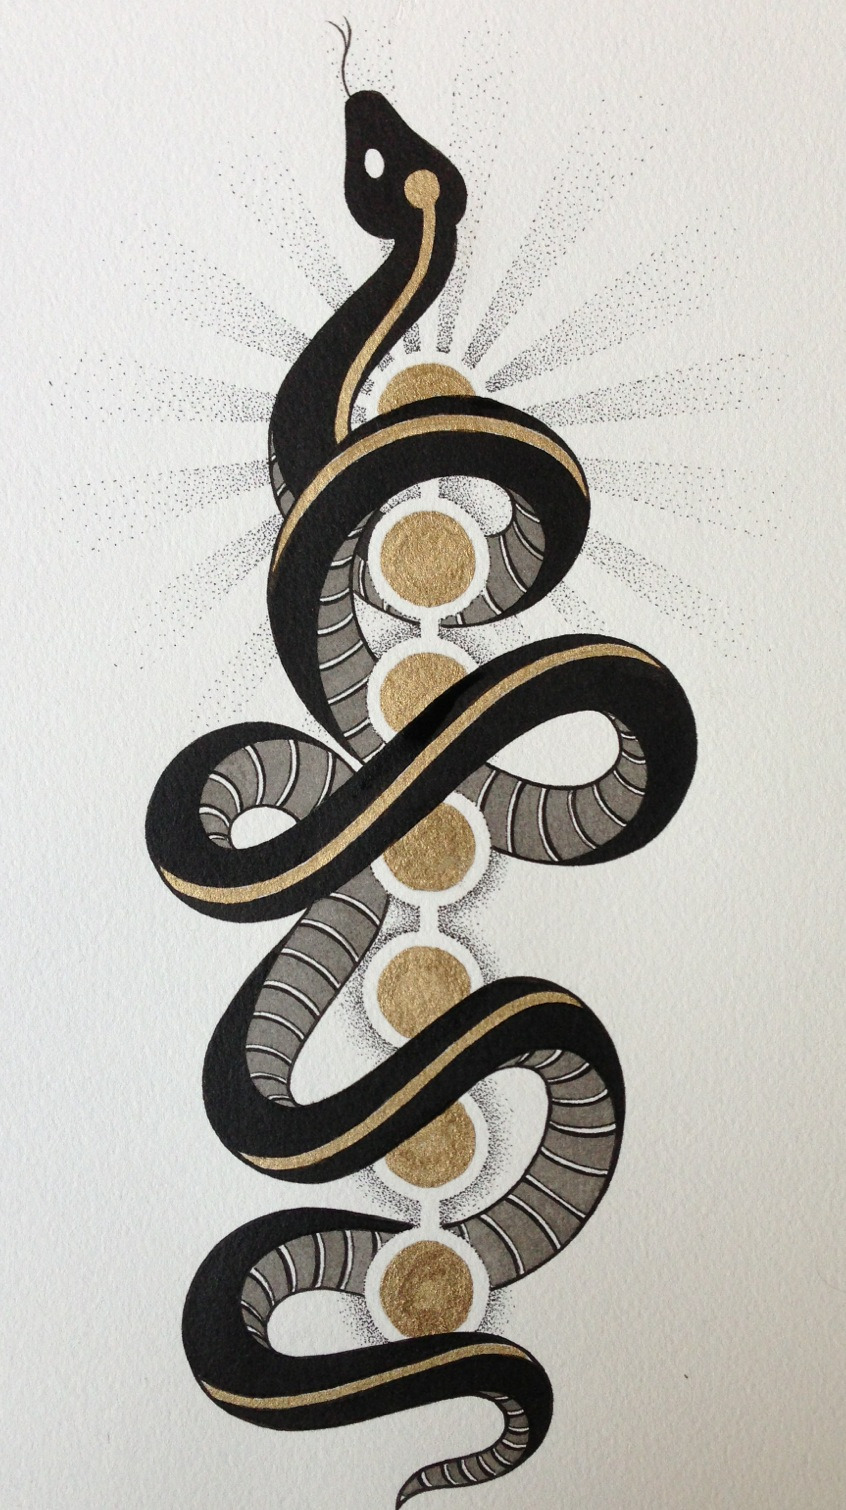 snake and chakras illustration by michael e bennett